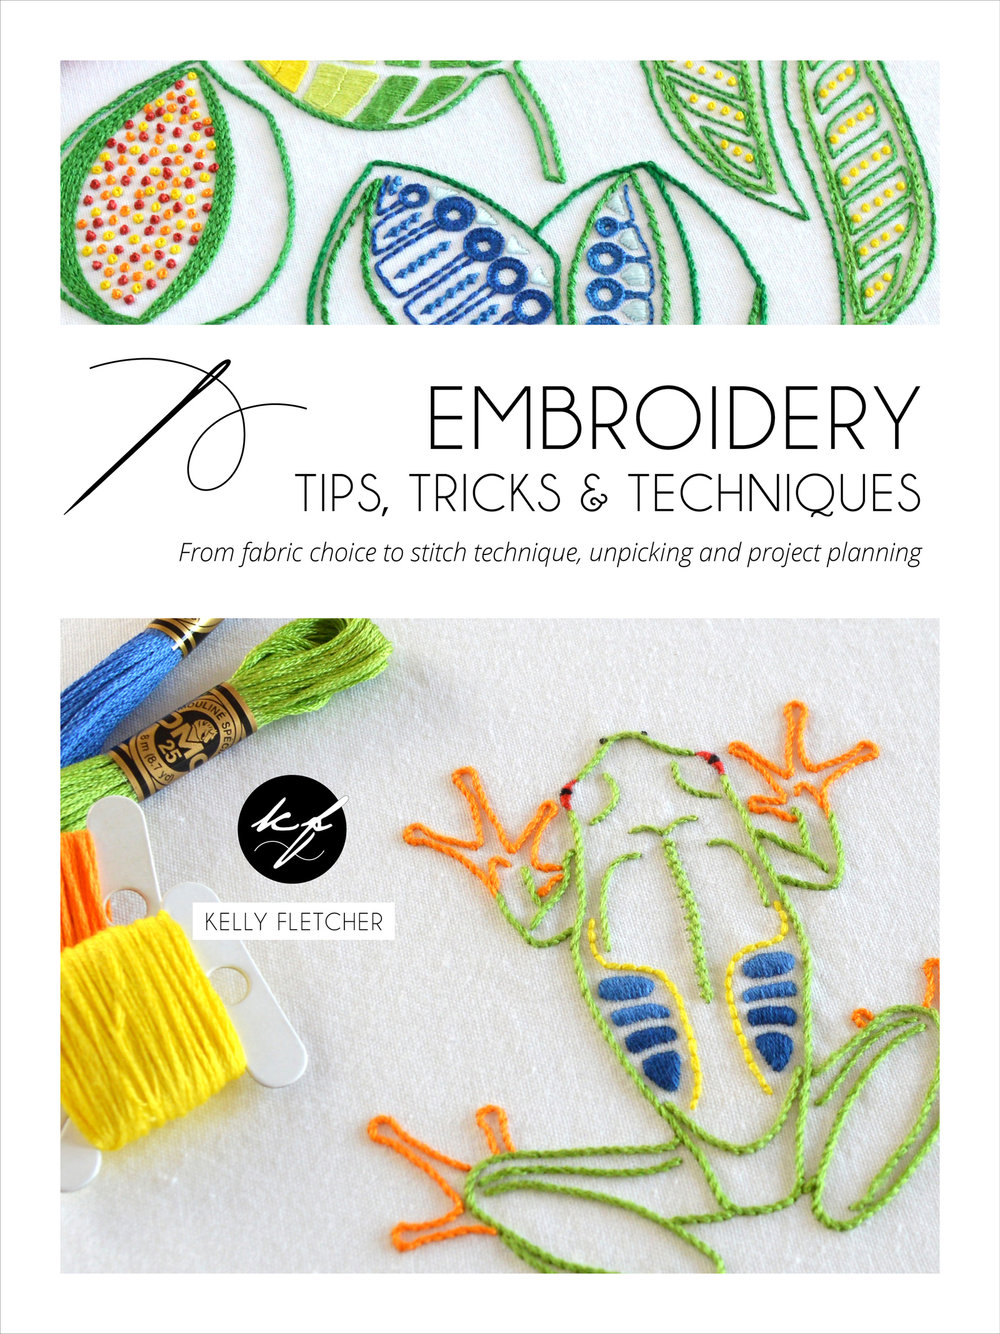 EmbroideryTipsTricksTechniquesB_KellyFletcher.jpg